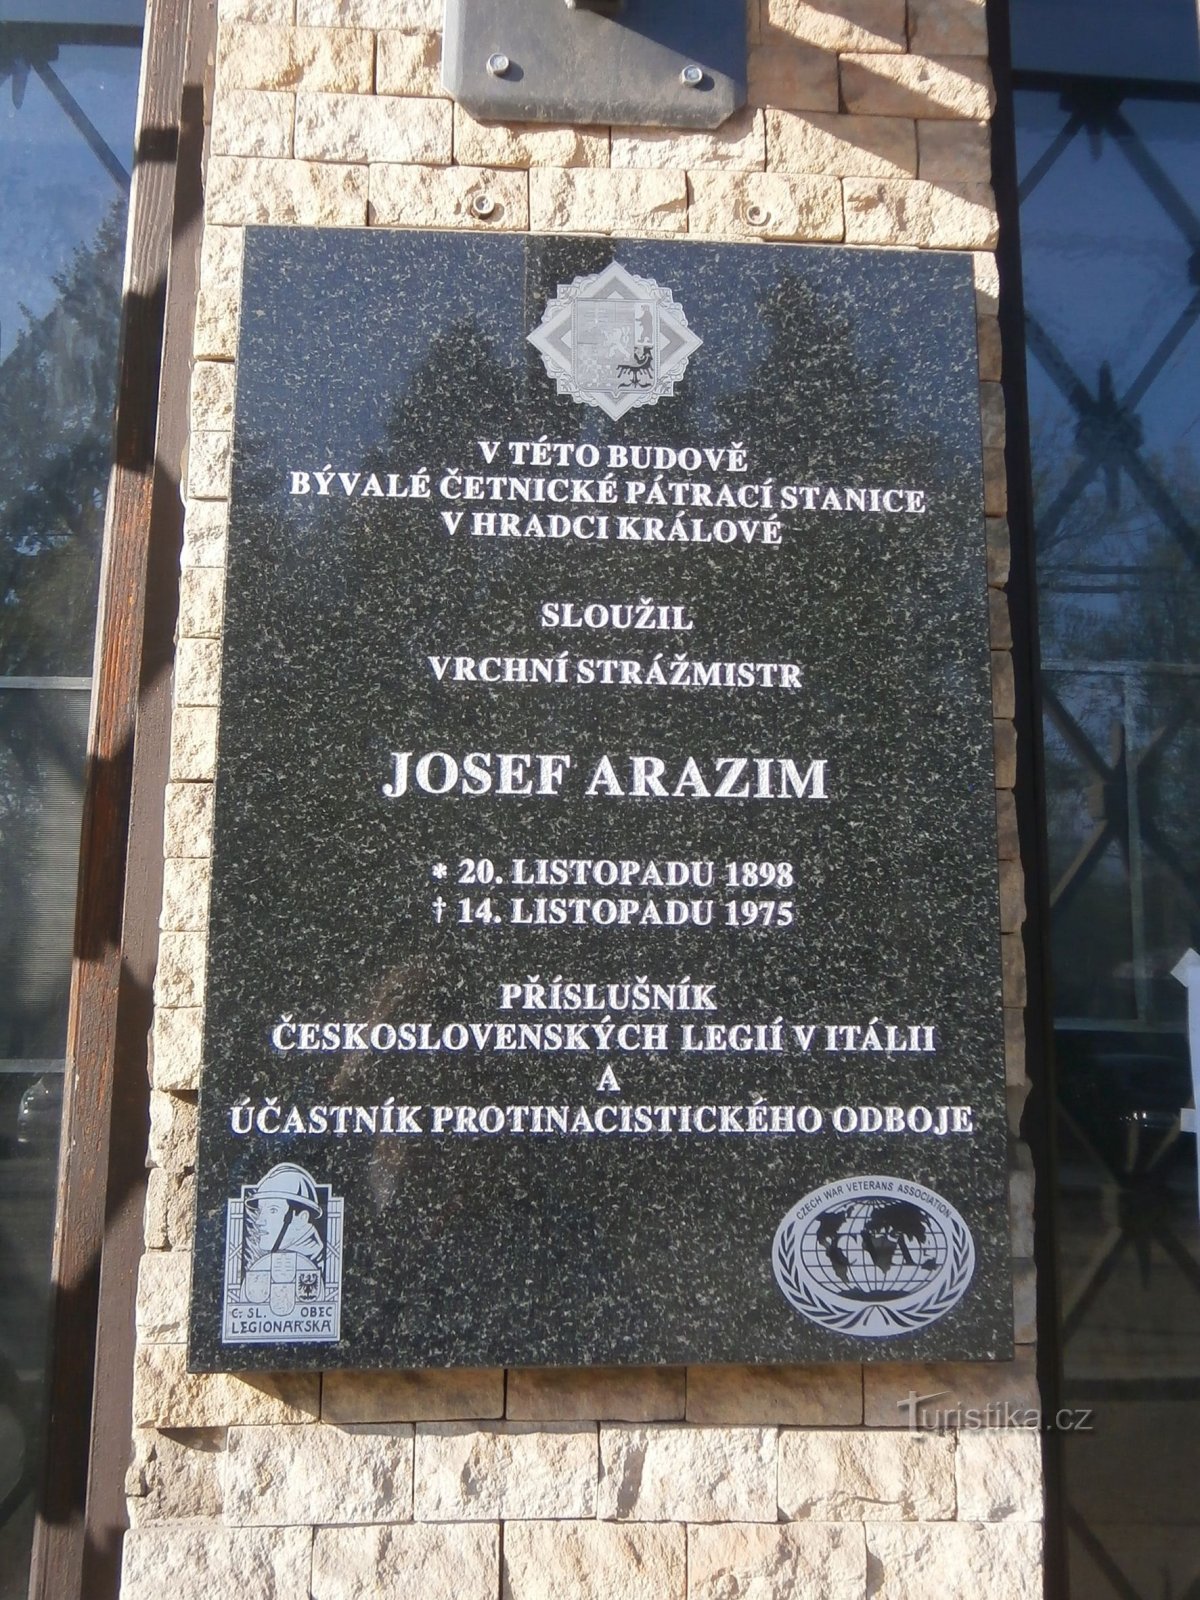 Placa conmemorativa a Josef Arazím (Hradec Králové, 14.4.2017 de abril de XNUMX)